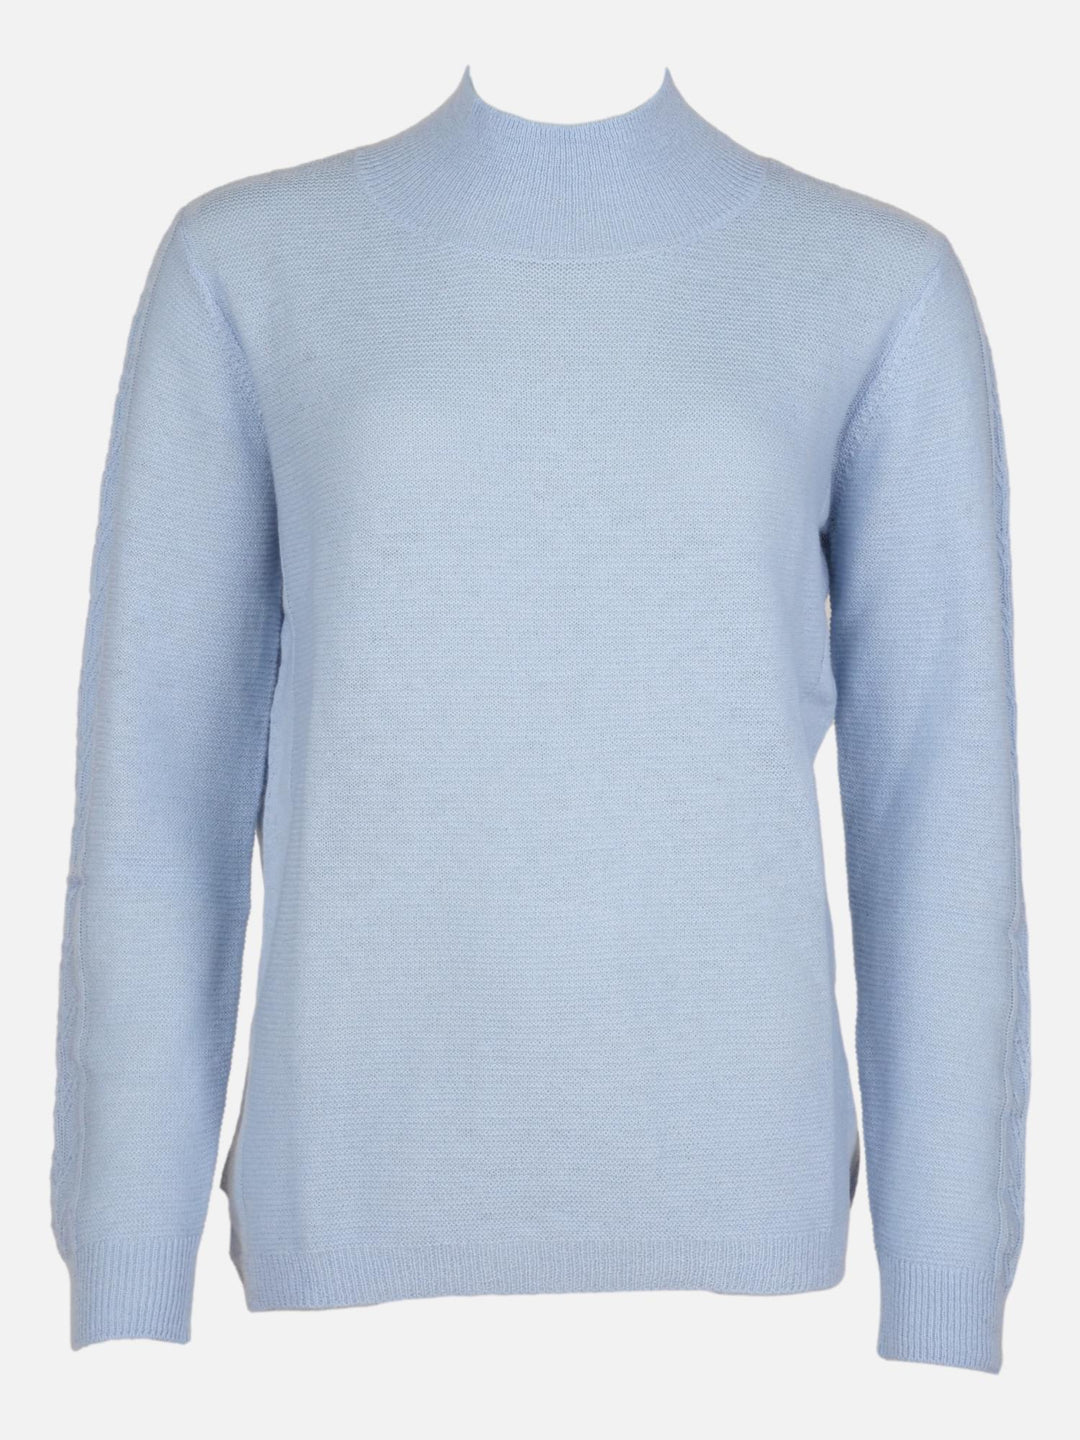 MKI Sweater - 100% Wool shirt - Women - Light Blue